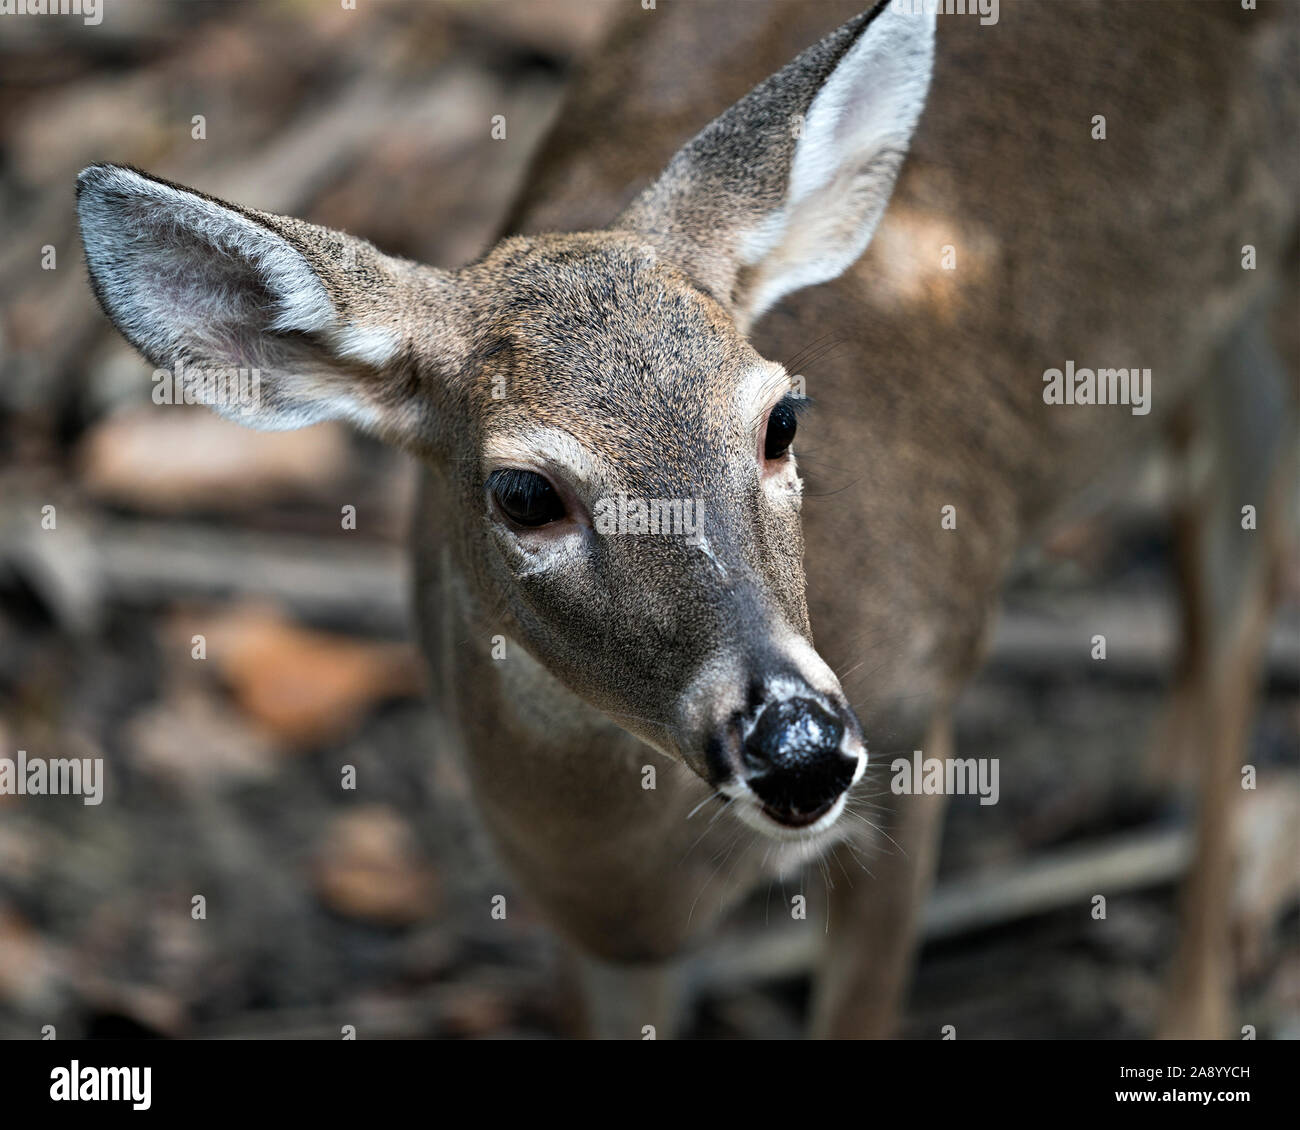 Le chevreuil (cerf de Virginie) close-up head voir exposer sa tête, oreilles, yeux, nez, dans son environnement et ses environs. Banque D'Images